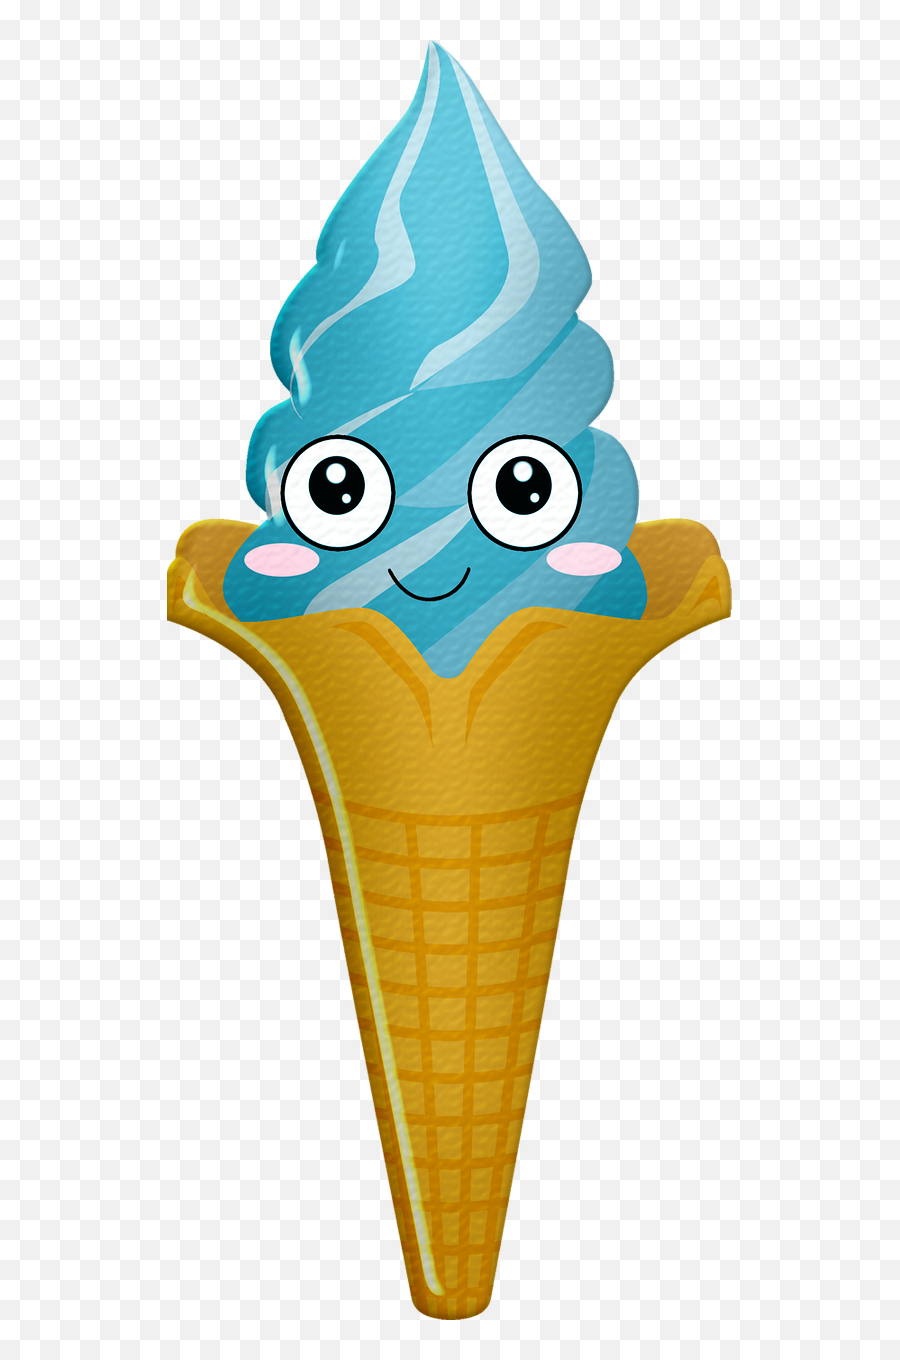 Ice Cream Cone Emoji - Cone,Ice Cream Cone Emoji